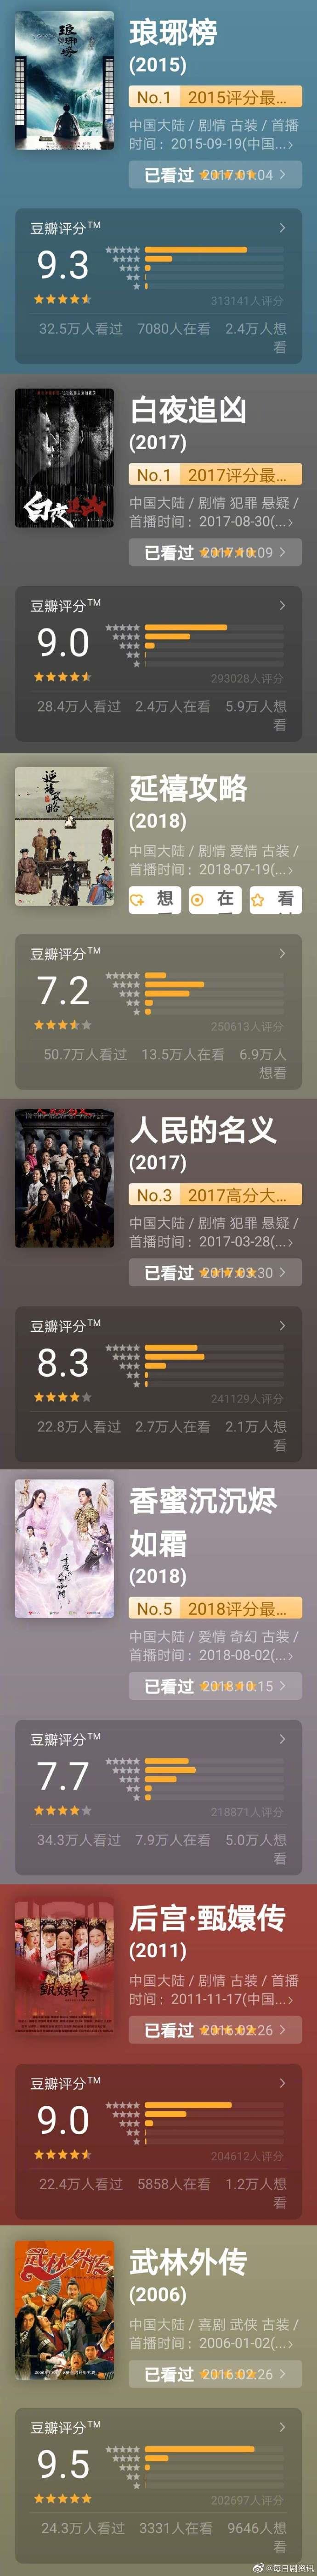 陈情令成为第8部豆瓣评分人数超过20万的国产剧！